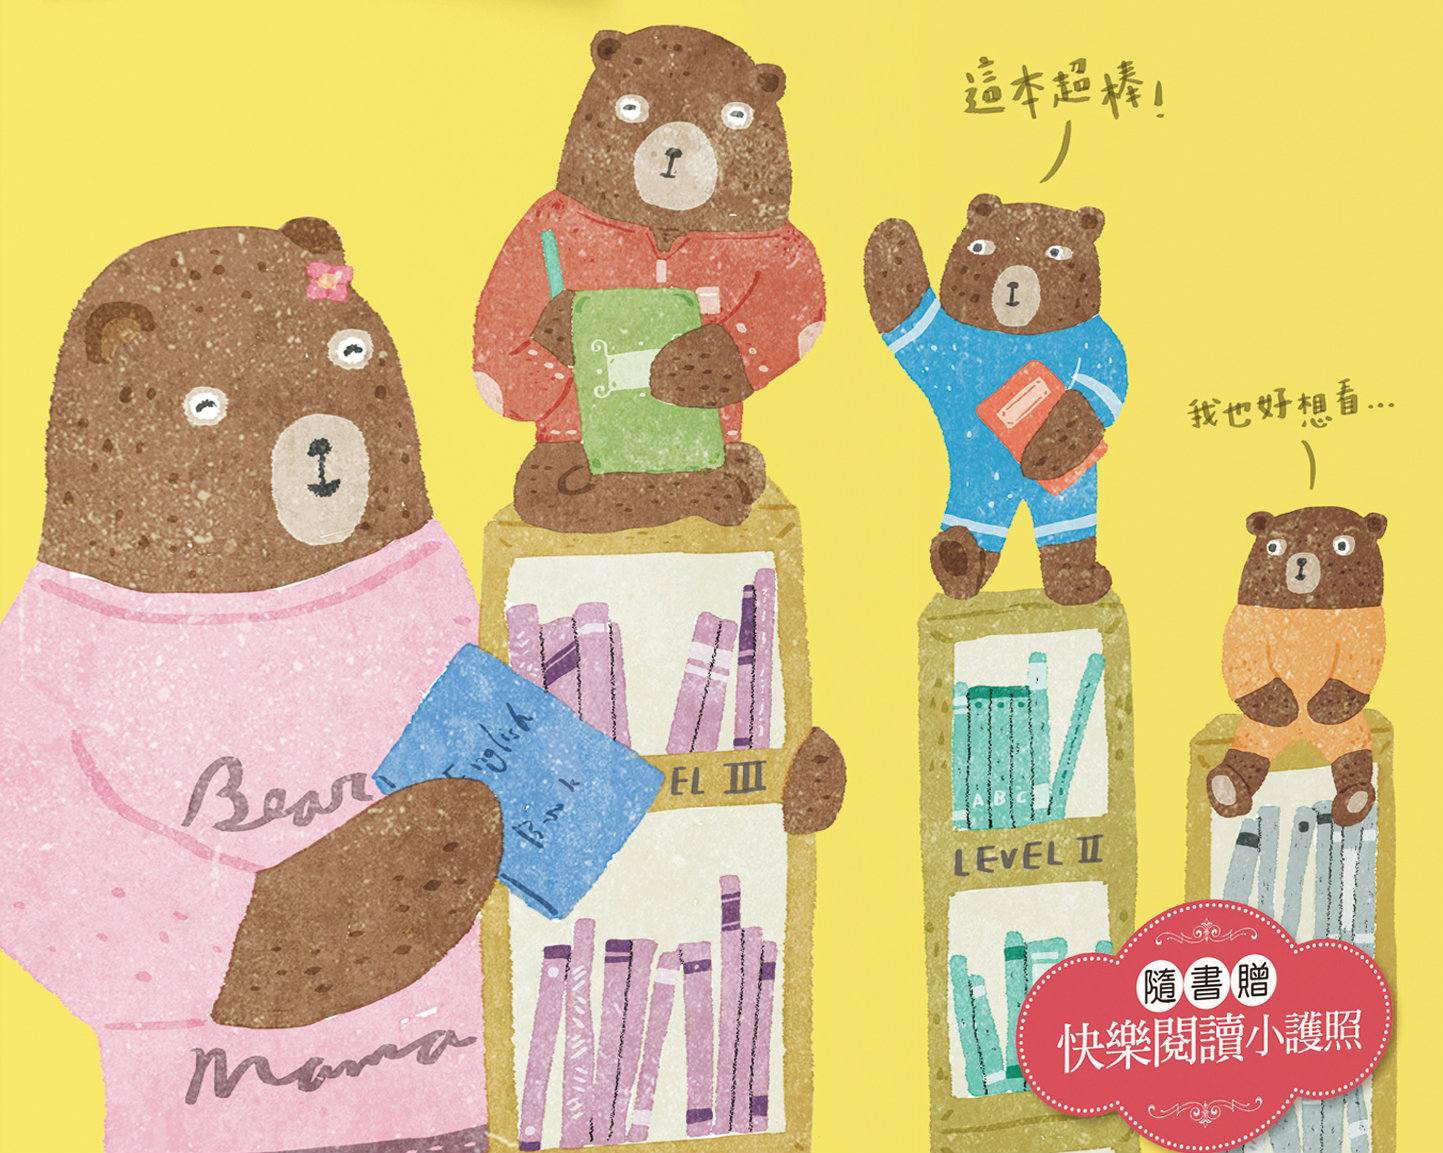 《小熊媽給中小學生的經典&悅讀書單101+》留言贈書活動(得獎名單)